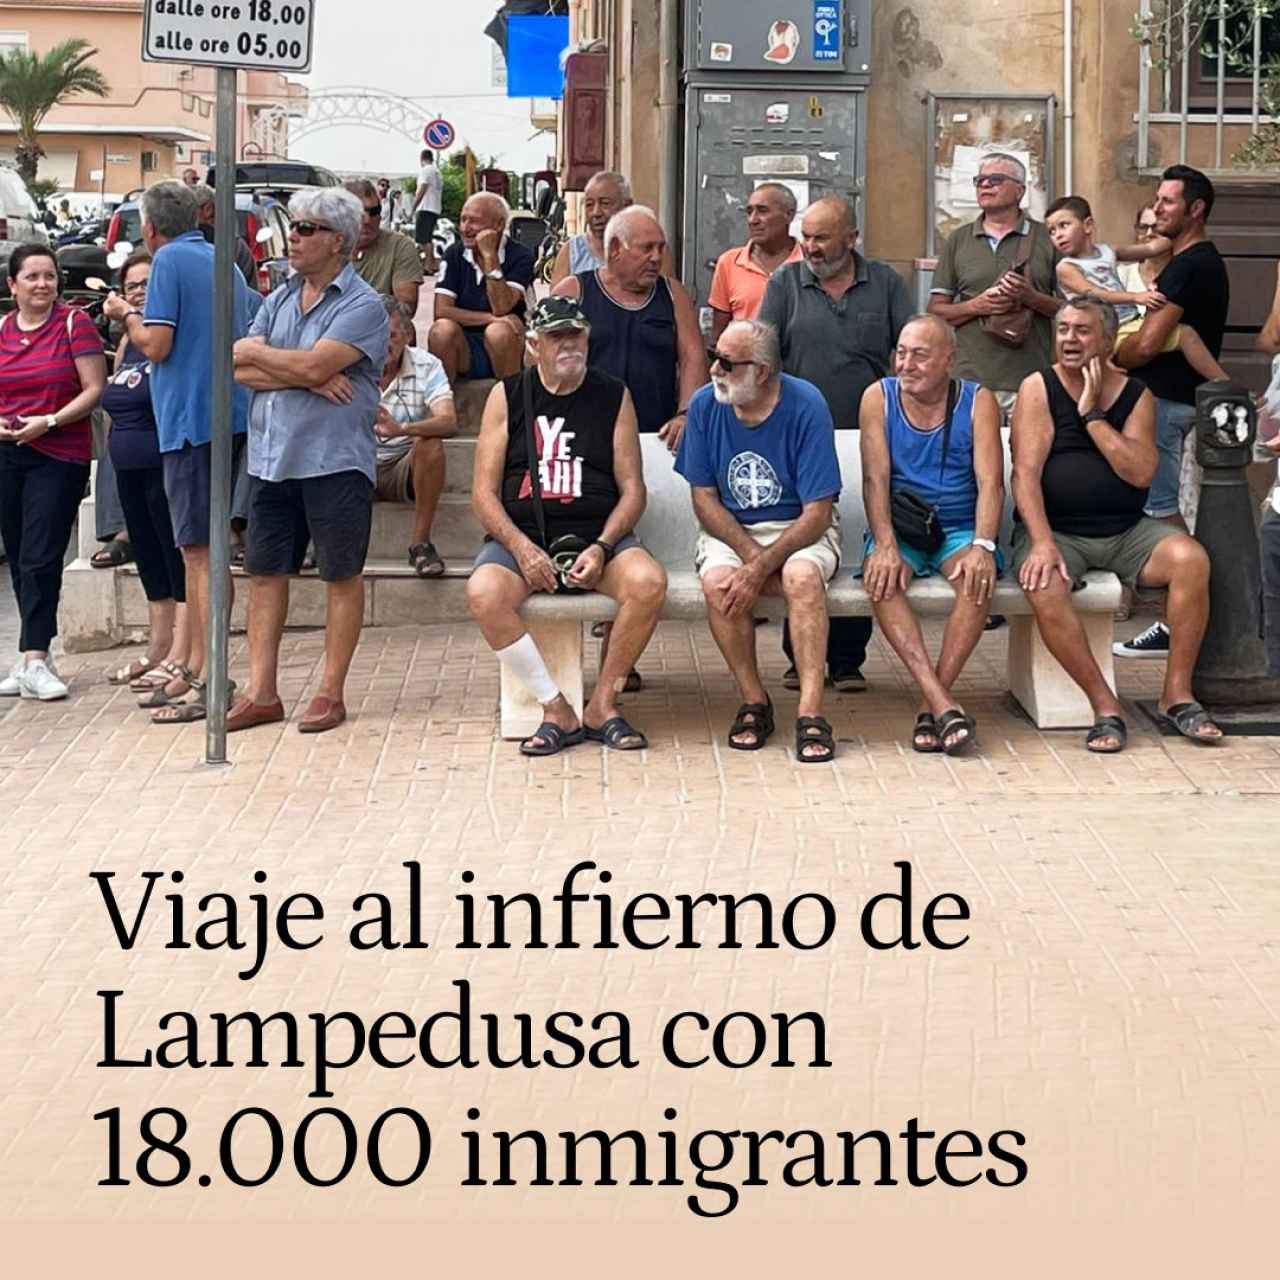 "No queremos ser el Alcatraz de Europa": viaje al infierno de Lampedusa con 18.000 inmigrantes en una isla del tamaño de Ceuta